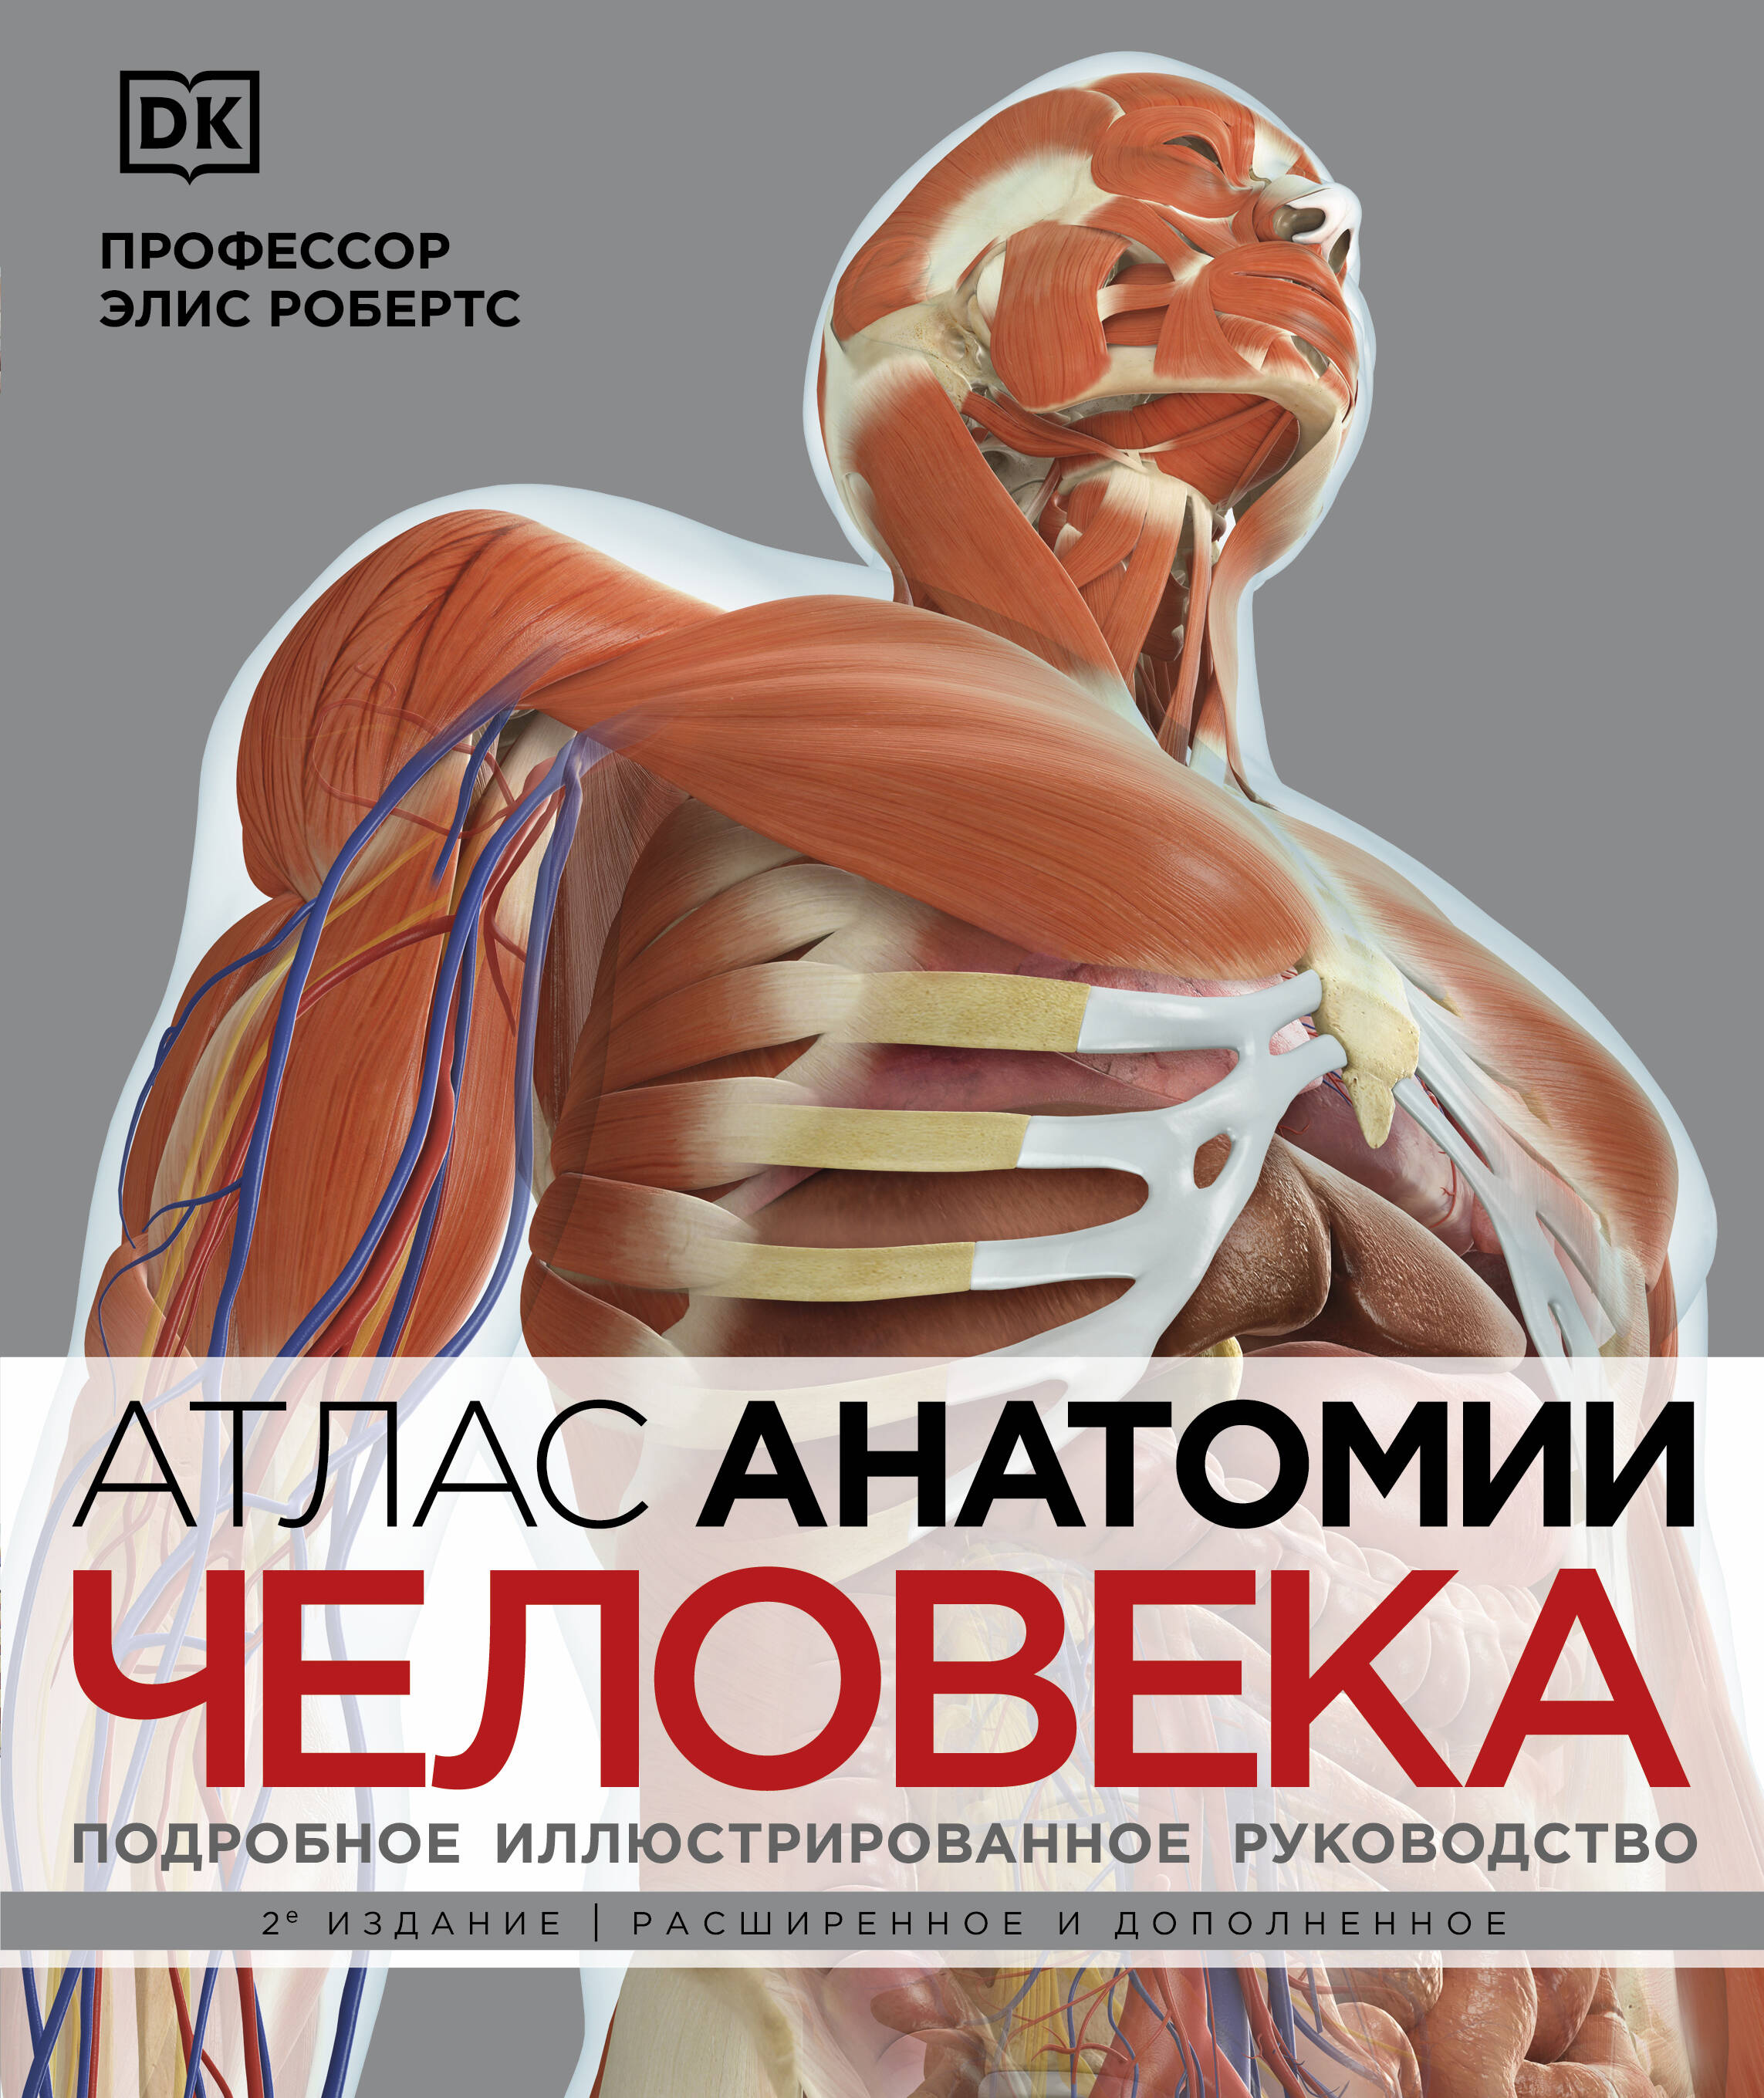 Робертс Элис Атлас анатомии человека. Подробное иллюстрированное руководство робертс элис эволюция происхождение человека